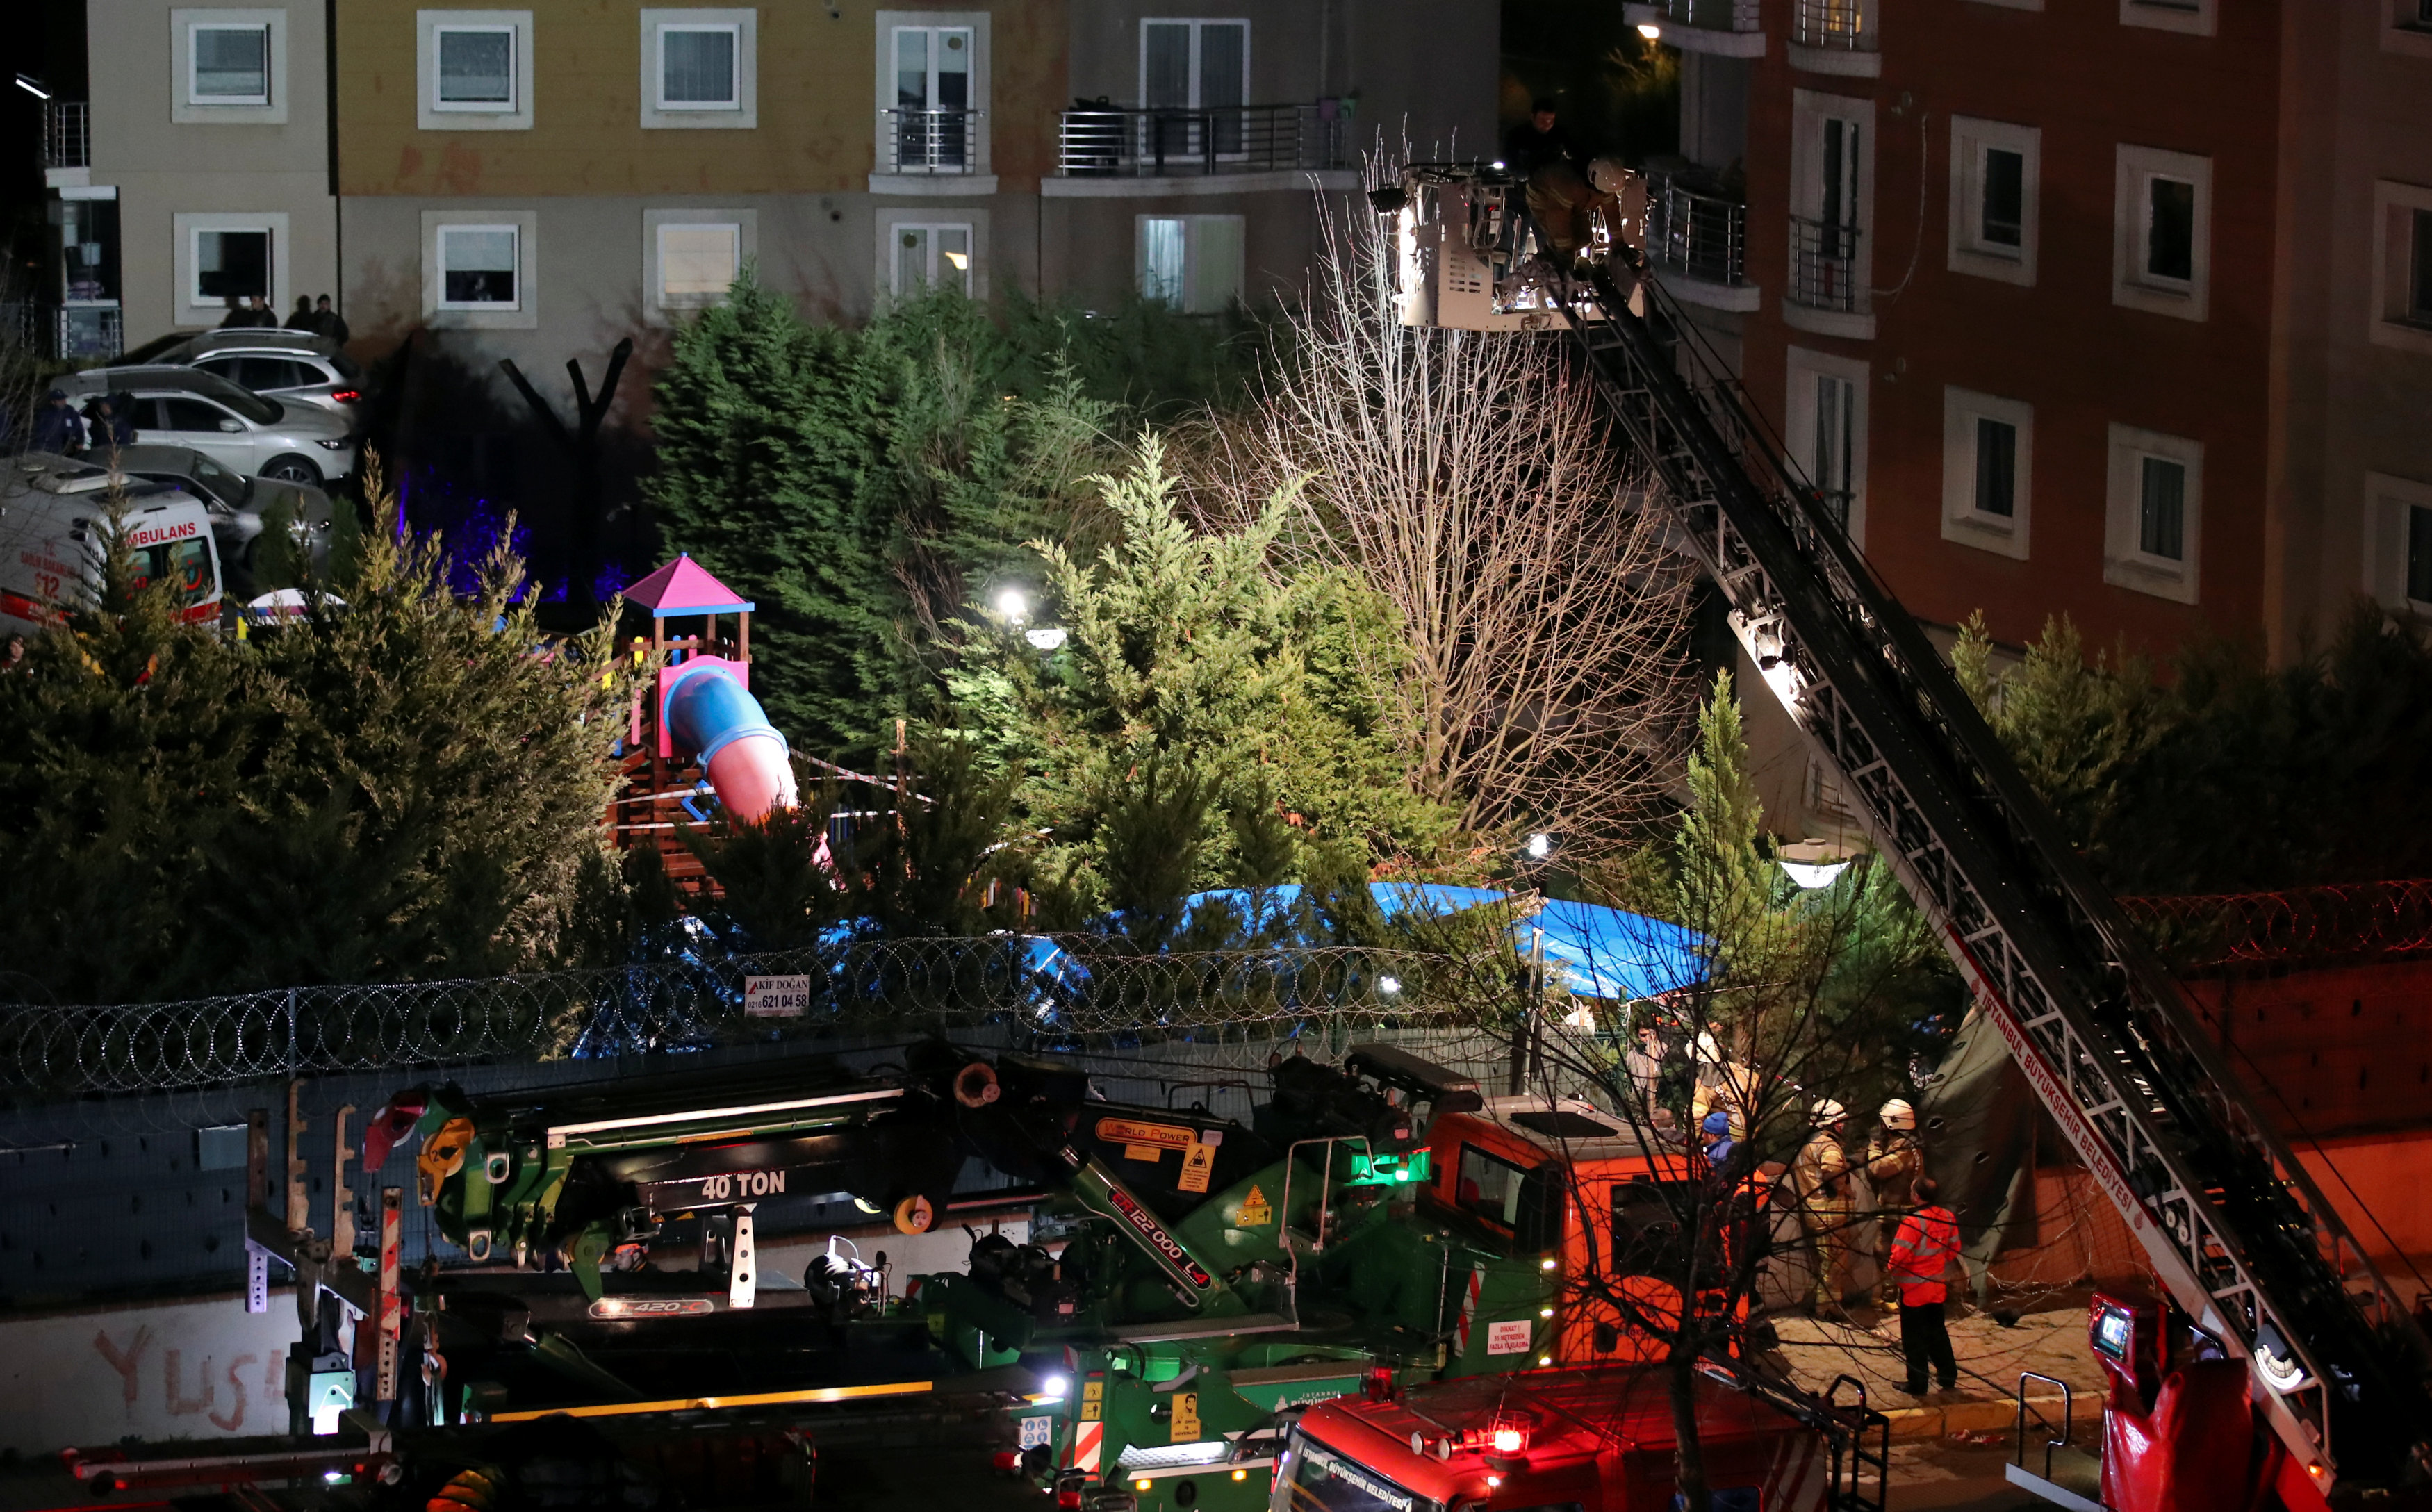 رجال إطفاء وشرطة يتفقدون موقع تحطم طائرة مروحية في إسطنبول.11 فبراير 2019. رويترز